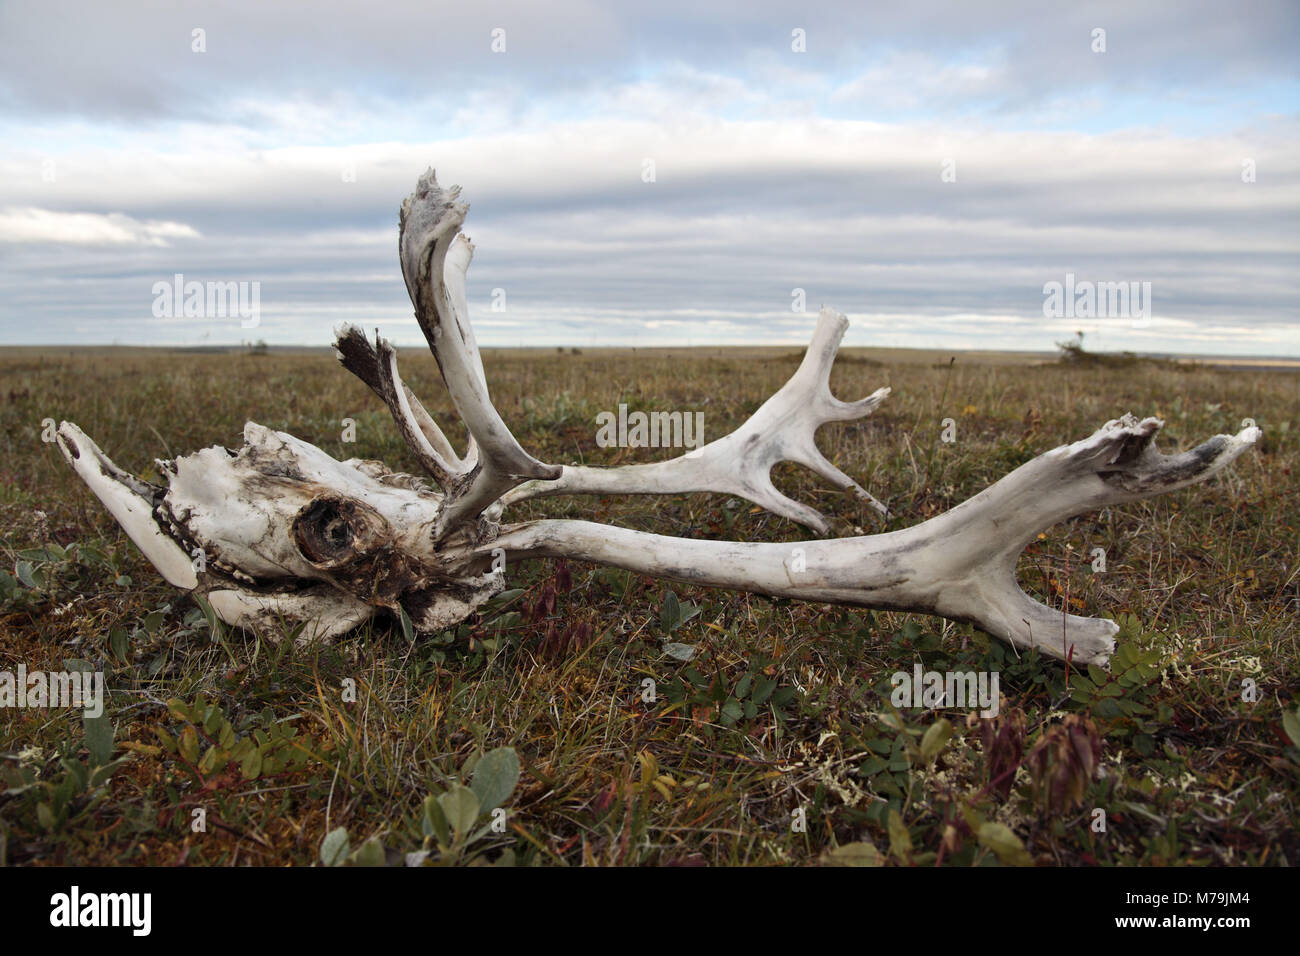 Asia, Russia, Siberia, region of Krasnojarsk, Taimyr peninsula, death's head, reindeer head, Stock Photo